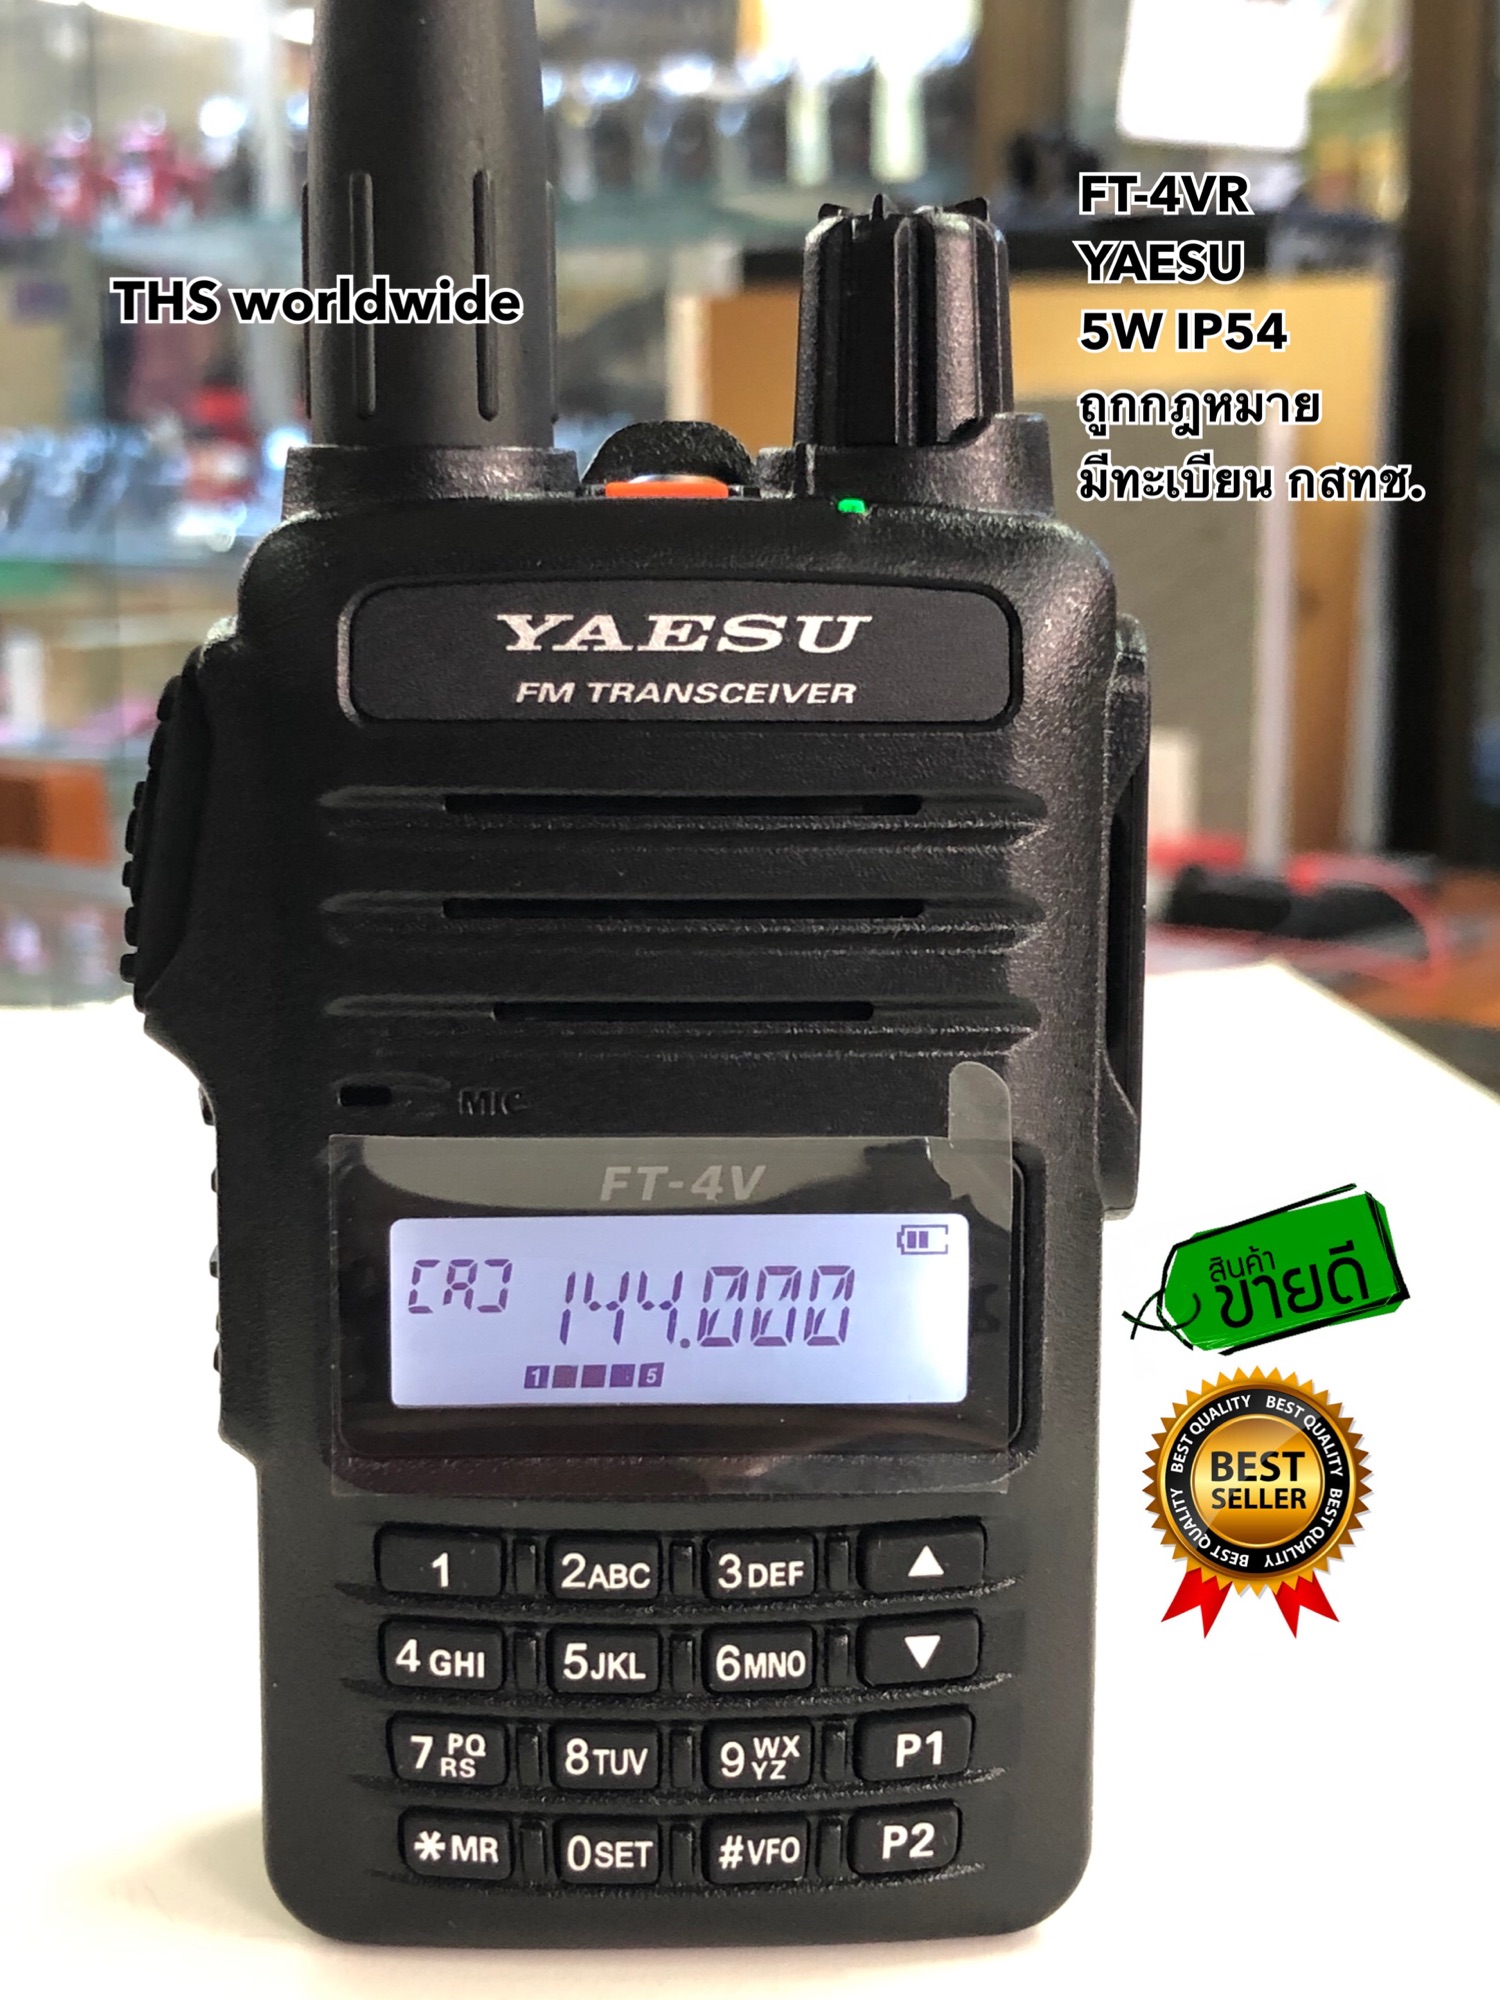 วิทยุสื่อสาร YAESU รุ่น FT-4V (มีทะเบียน ถูกกฎหมาย) VHF/FM 138-174MHz 5W. ขนาดเล็กกระทัดรัด ชาร์จแบตเตอรี่เต็มเร็วใน 3.5 ชั่วโมง...แนะนำ!